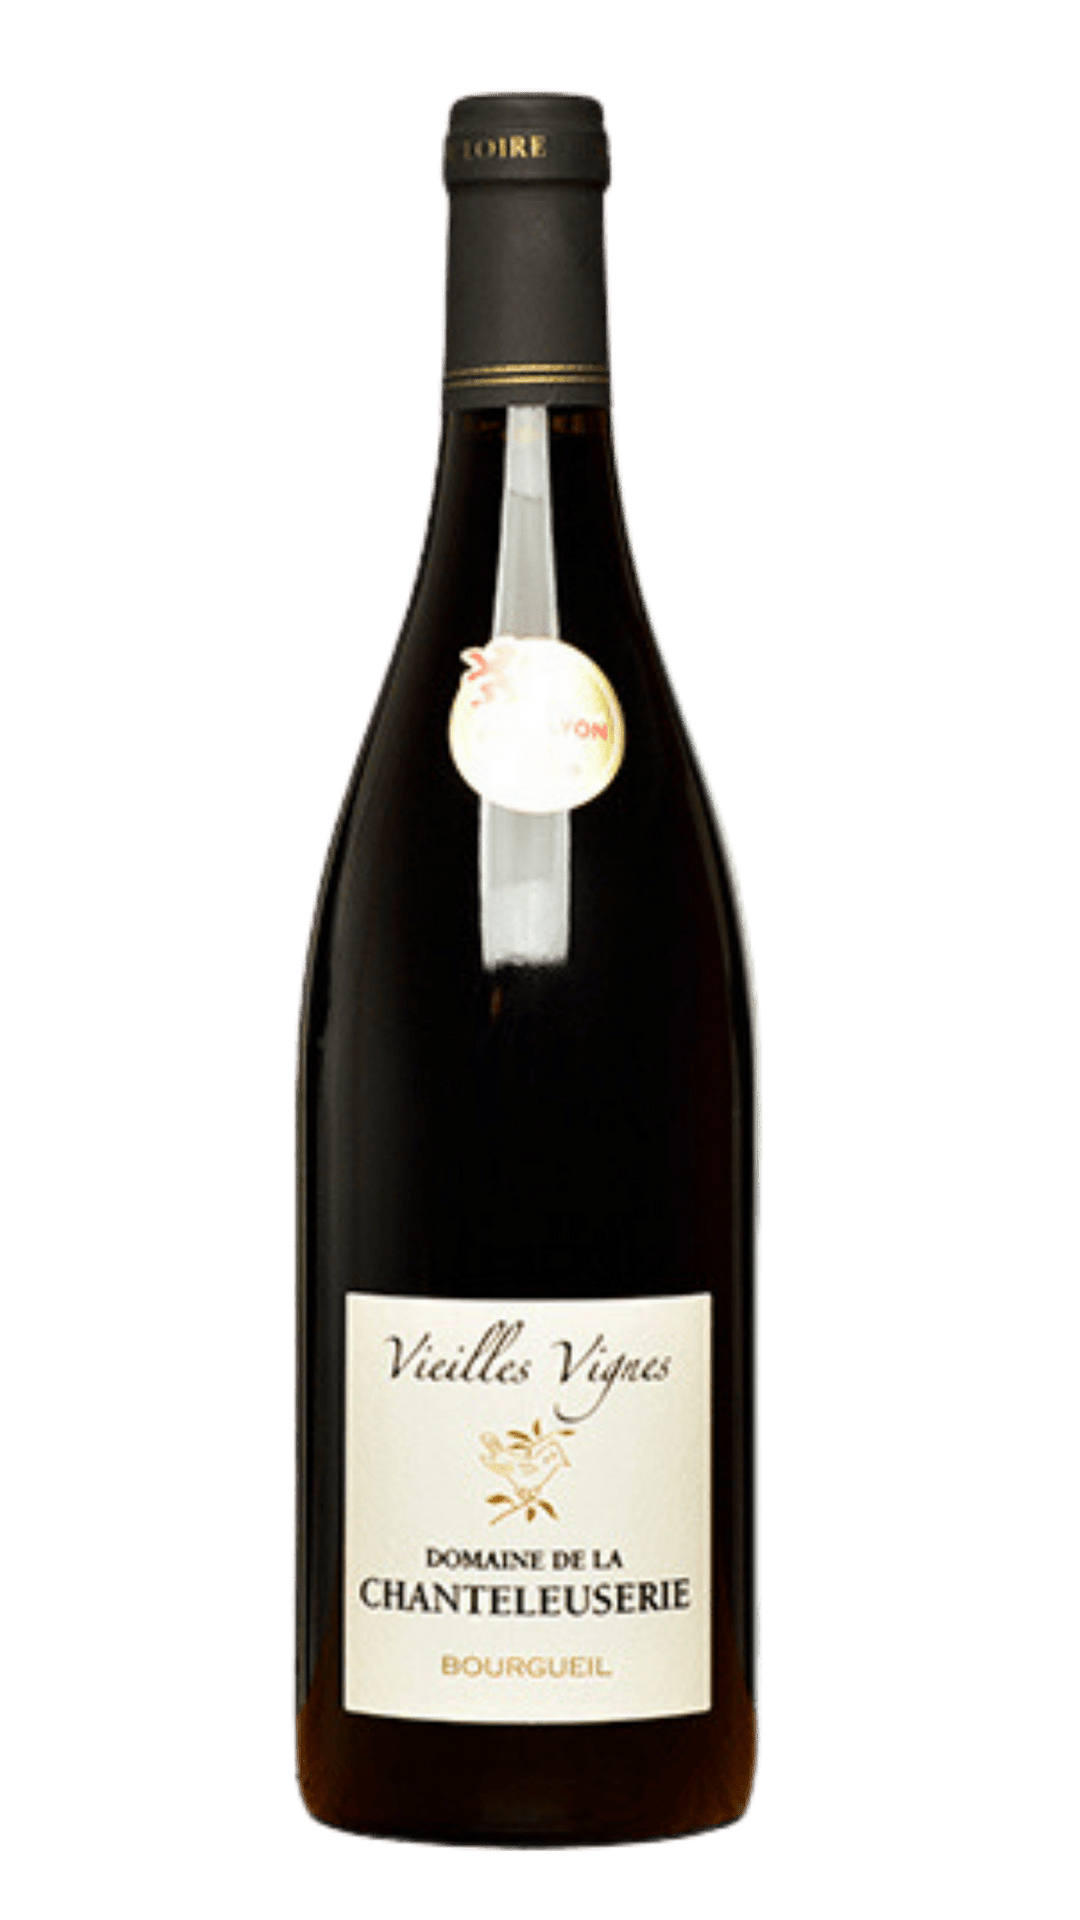 2019 Domaine de la Chanteleuserie Bourgueil Vieilles Vignes - Harvest Wine Shop